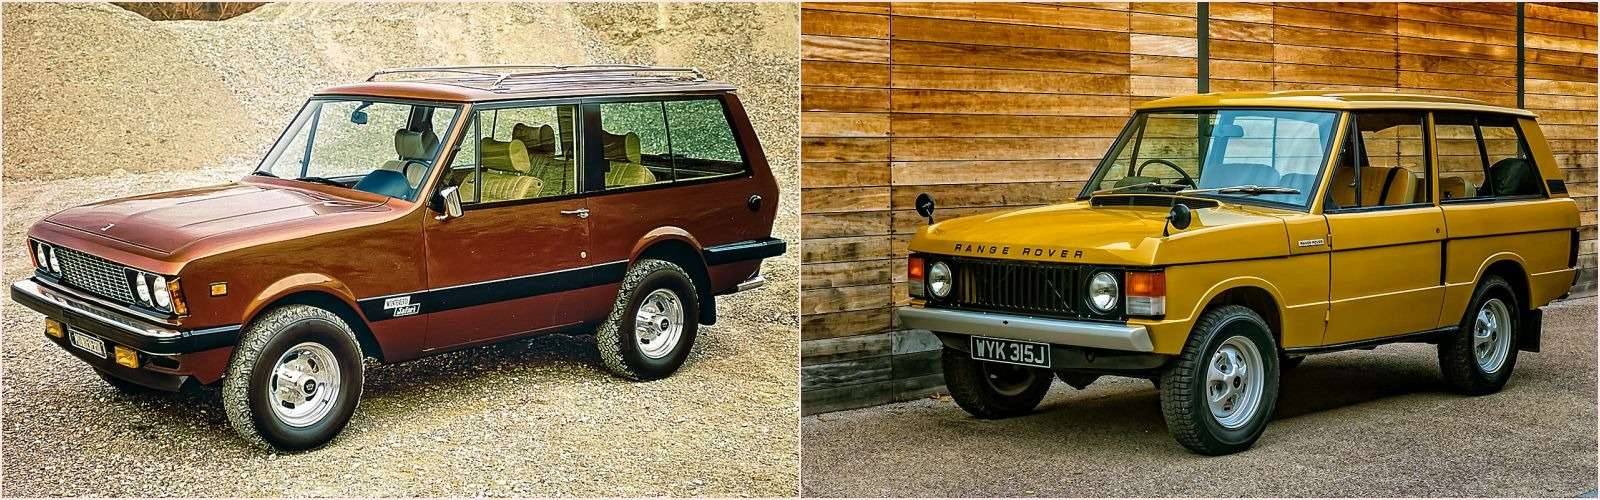 Швейцарский Monteverdi Safari сочетал американские шасси и узлы со стилистикой британского внедорожника Range Rover.